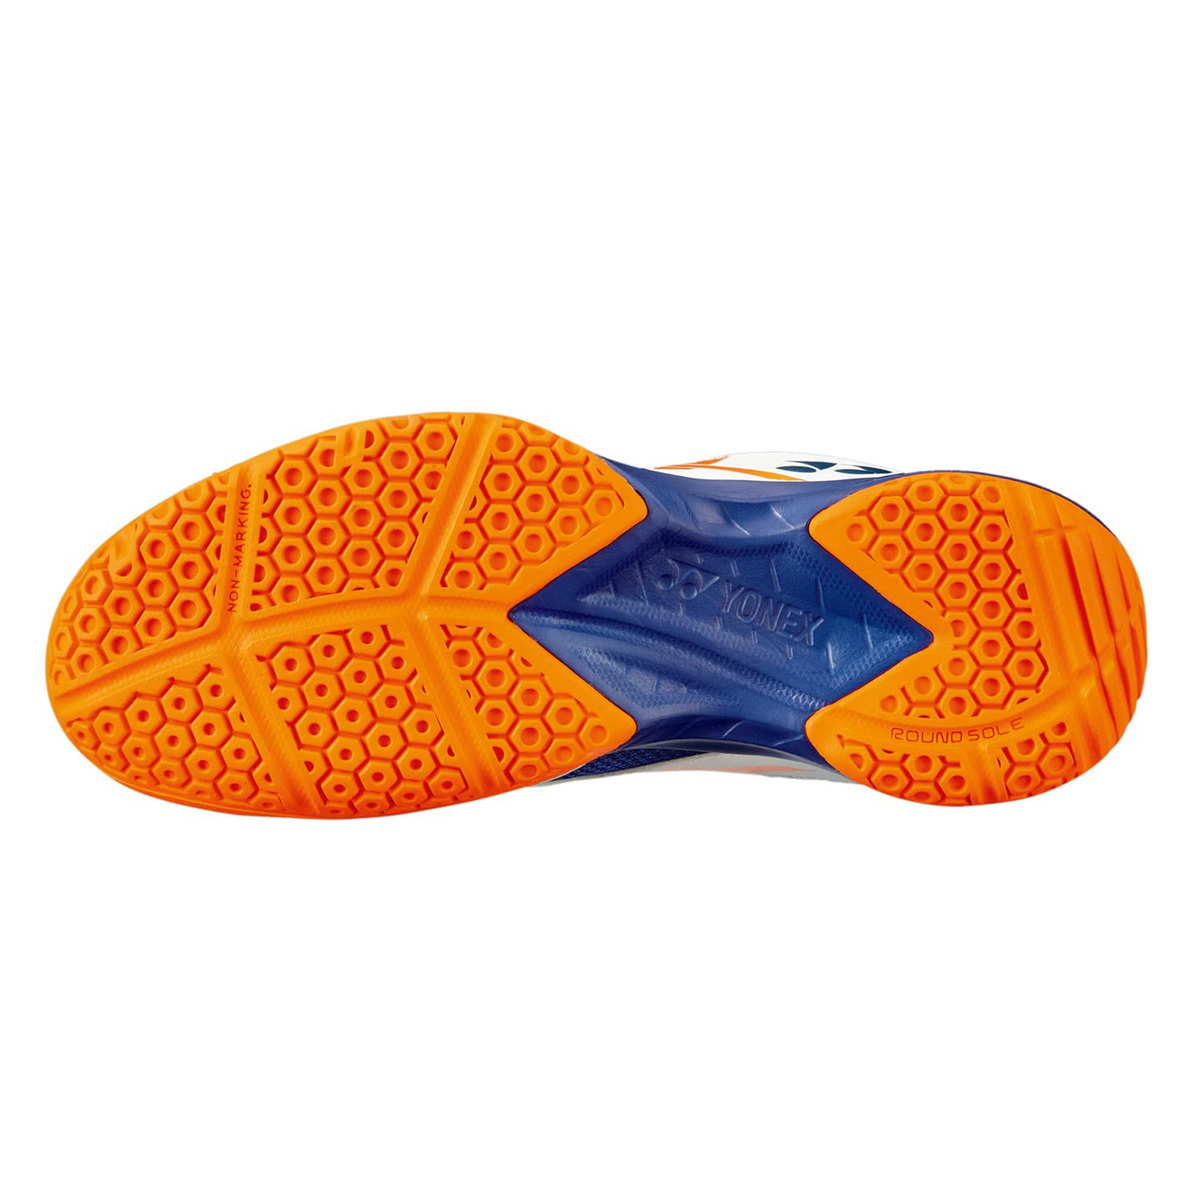 يونيكس حذاء تنس الريشة للرجال، SHB39EX، أبيض/برتقالي، 41